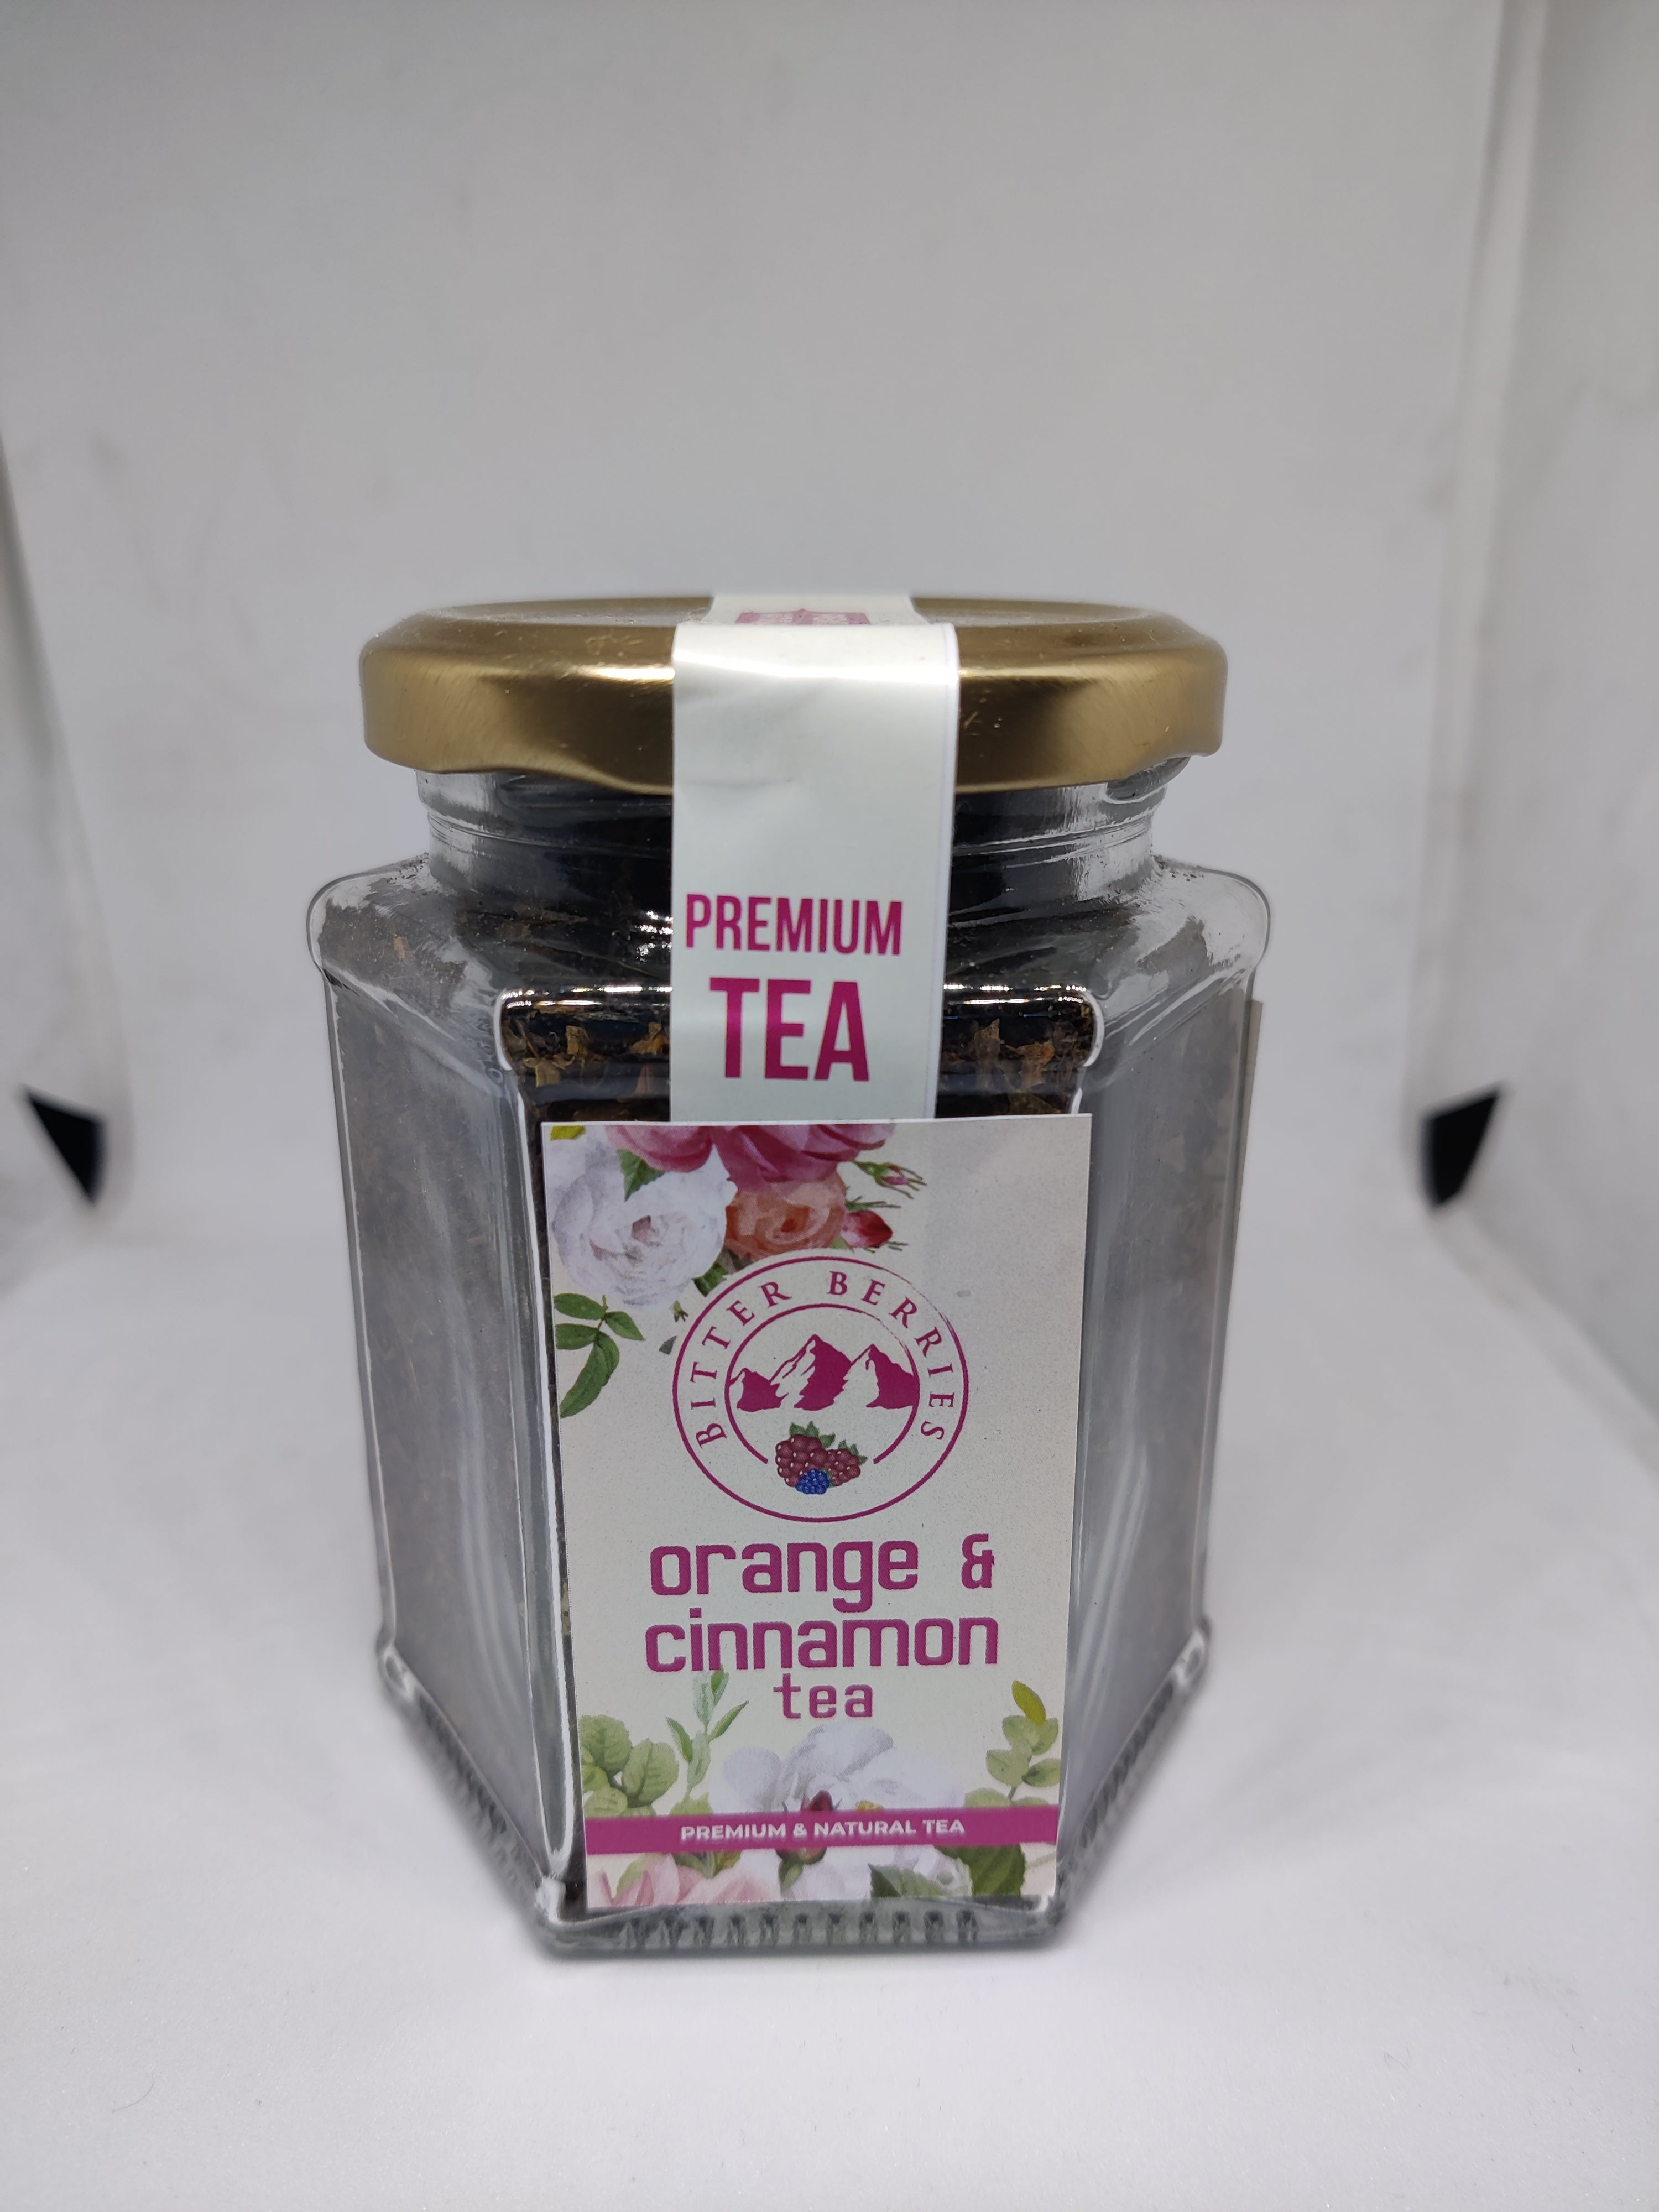 Orange and cinnamon Tea